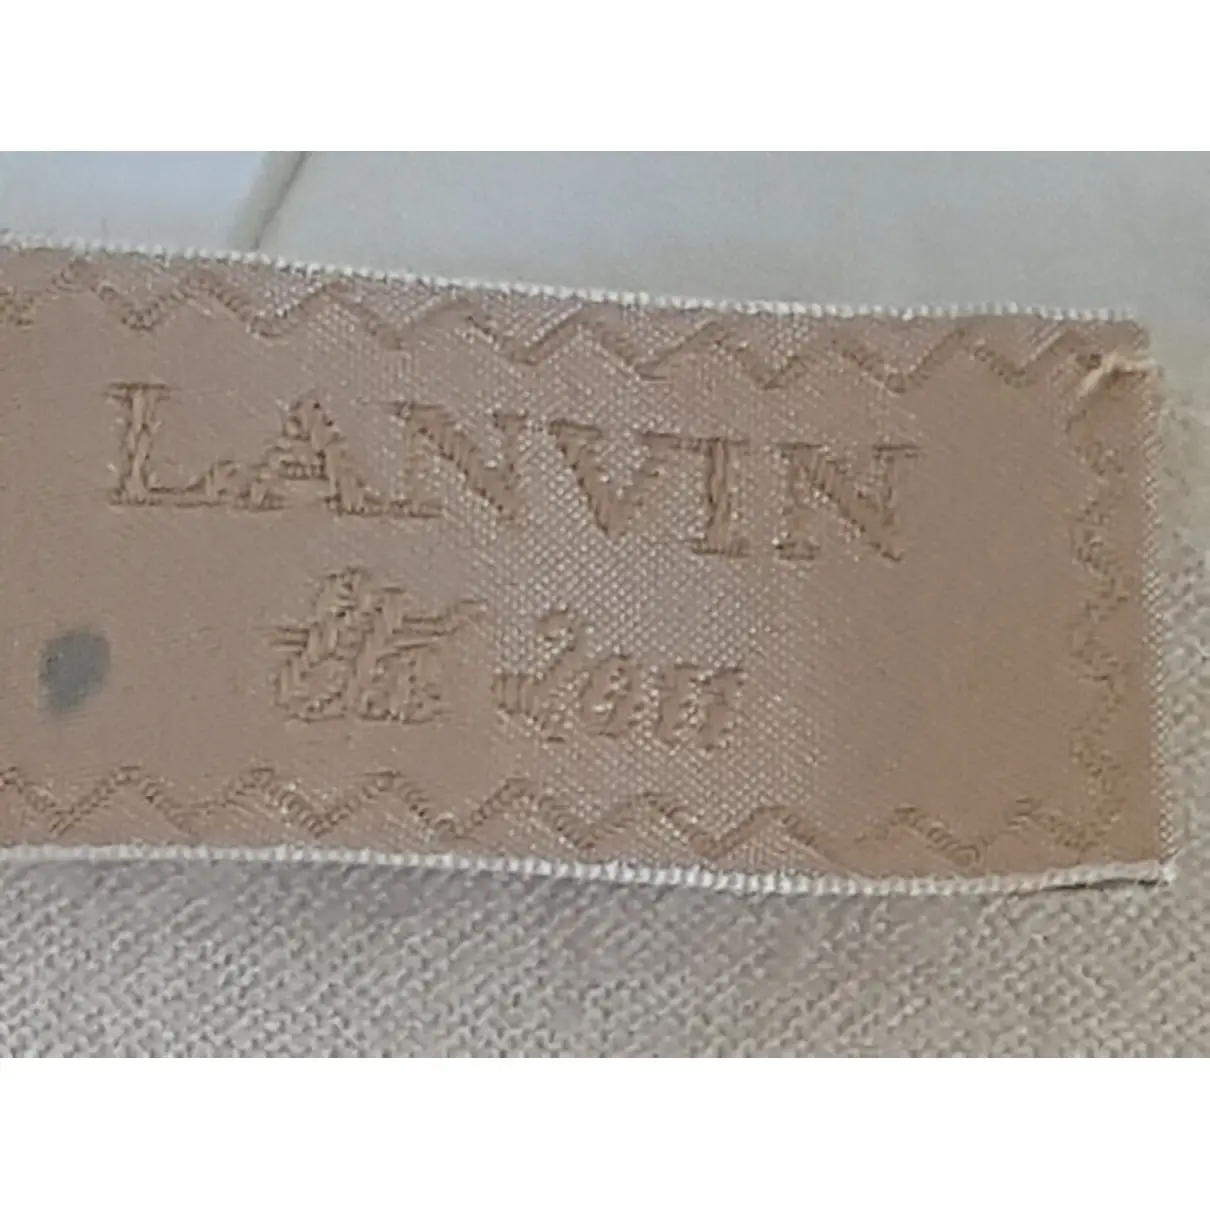 Luxury Lanvin Tops Women